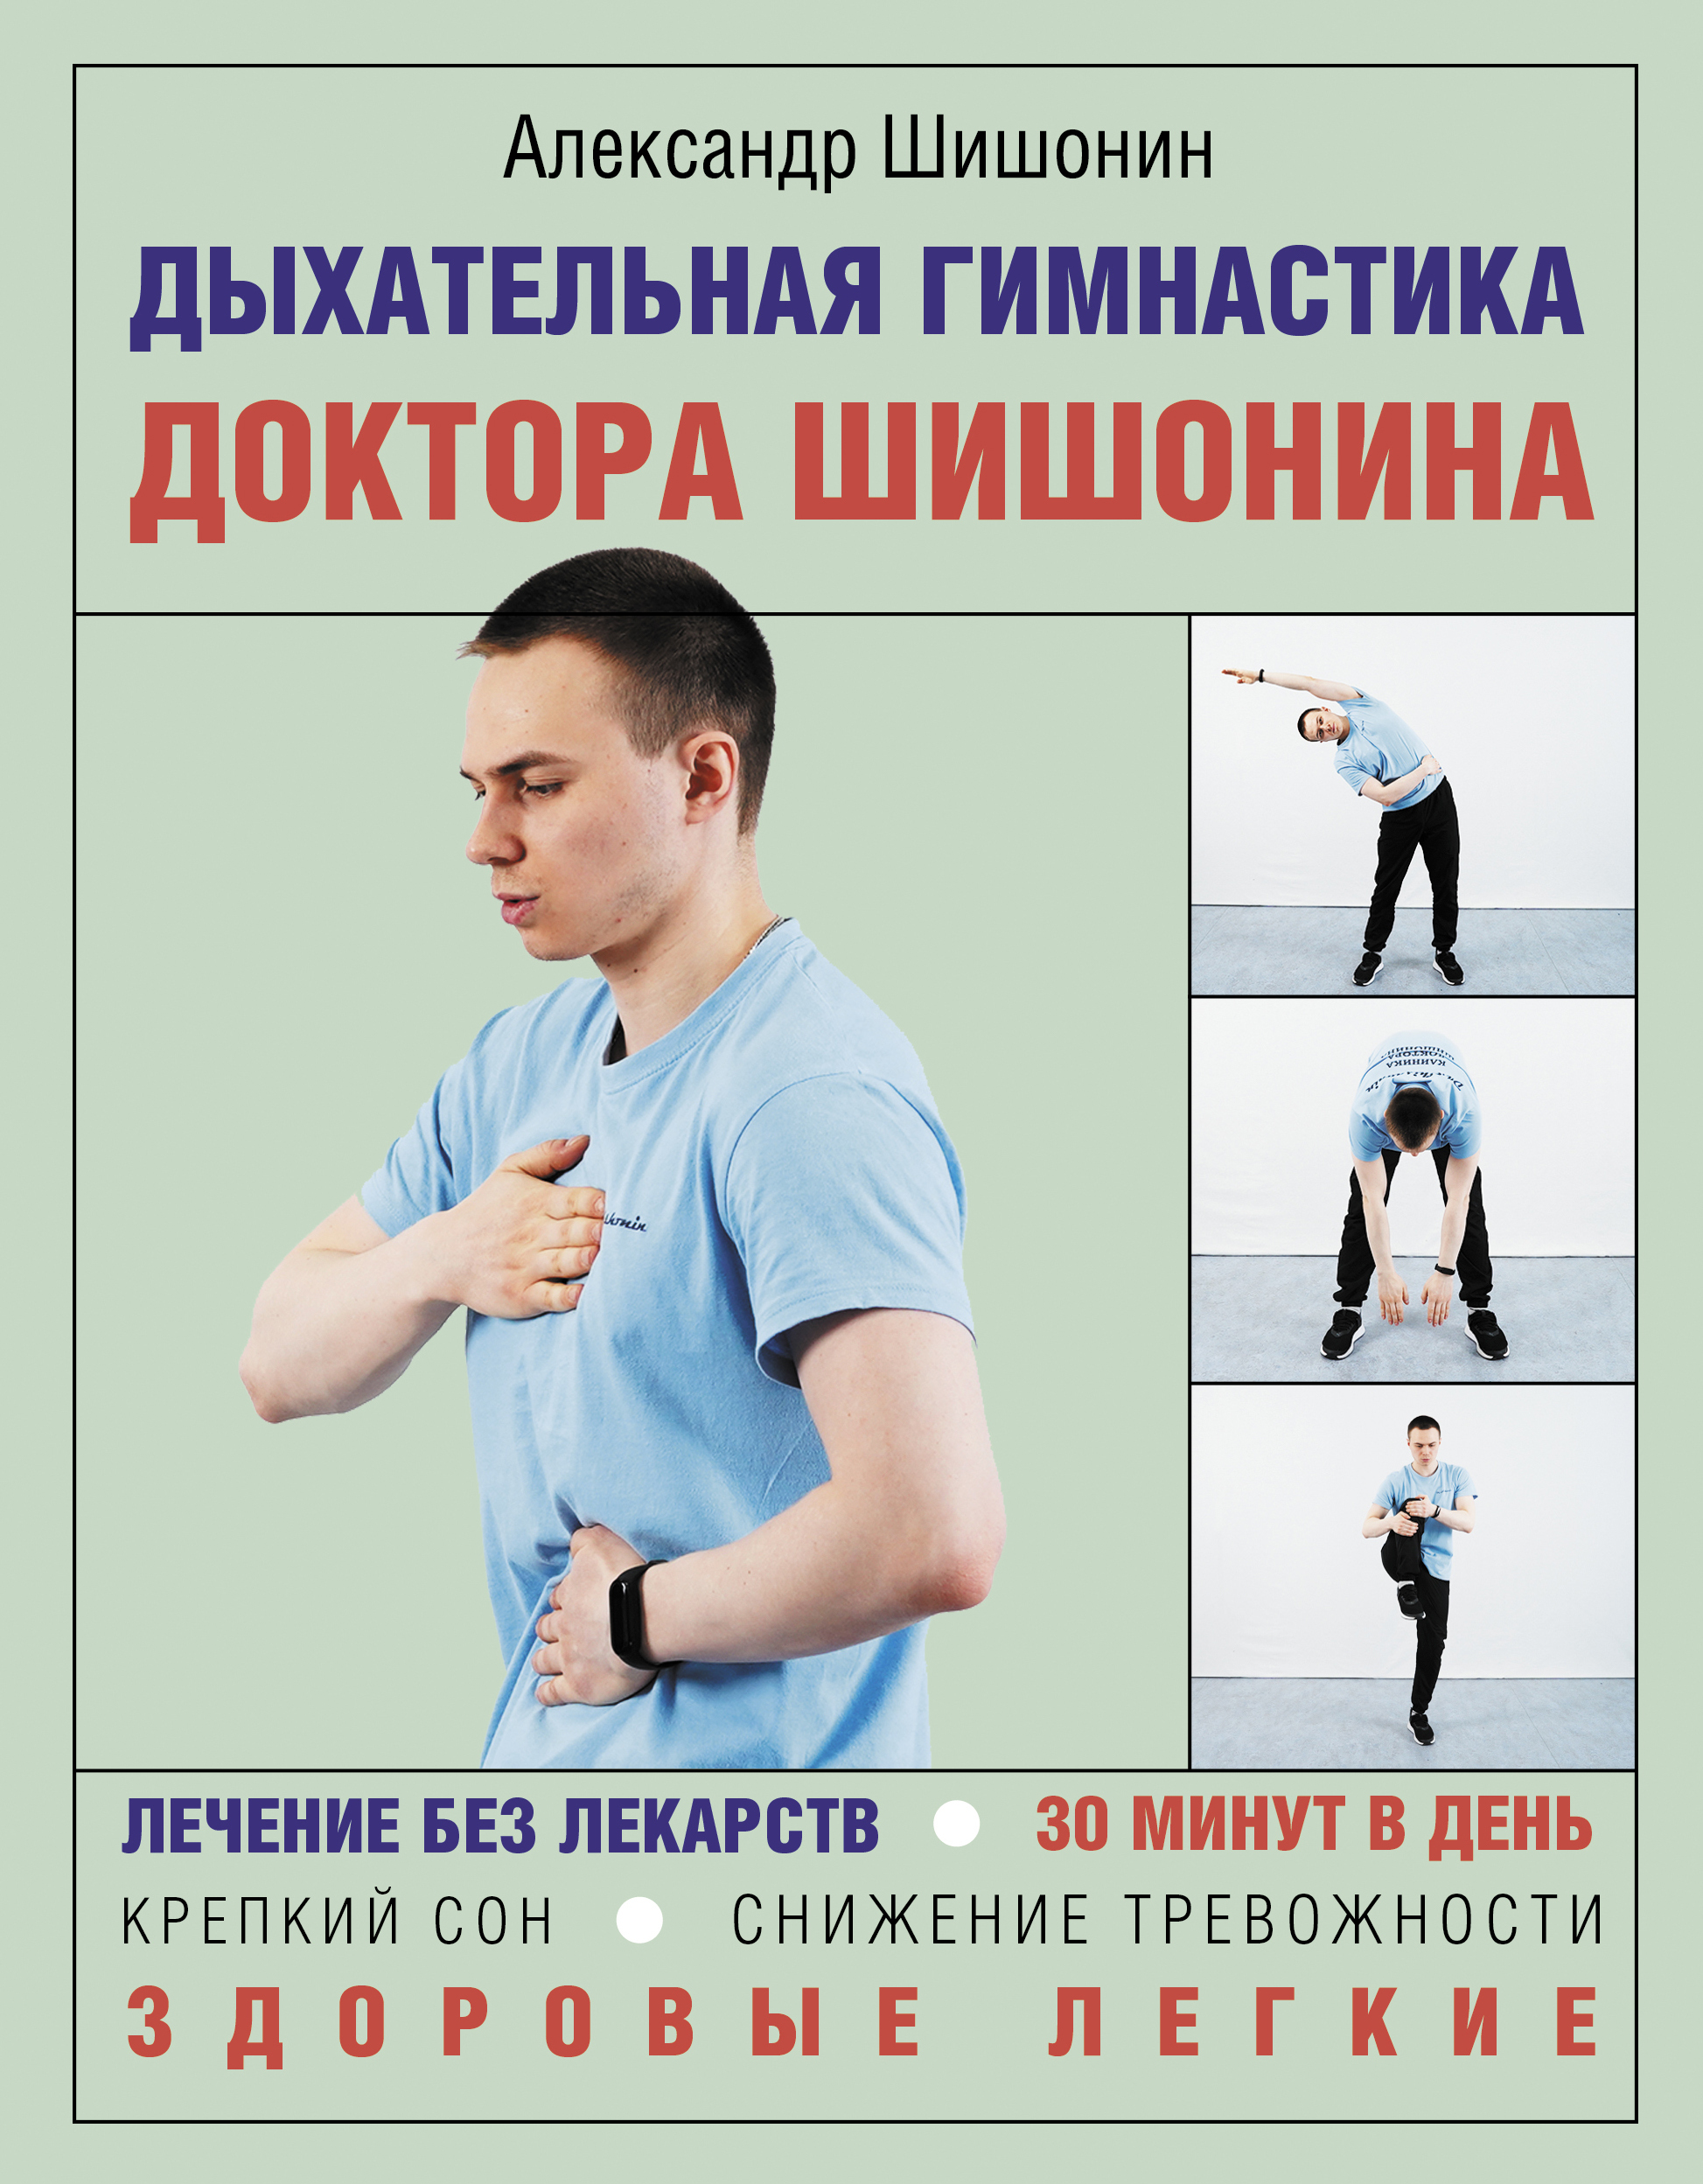 Диск Дыхательной Гимнастики Доктора Шишонина – купить в интернет-магазине  OZON по низкой цене